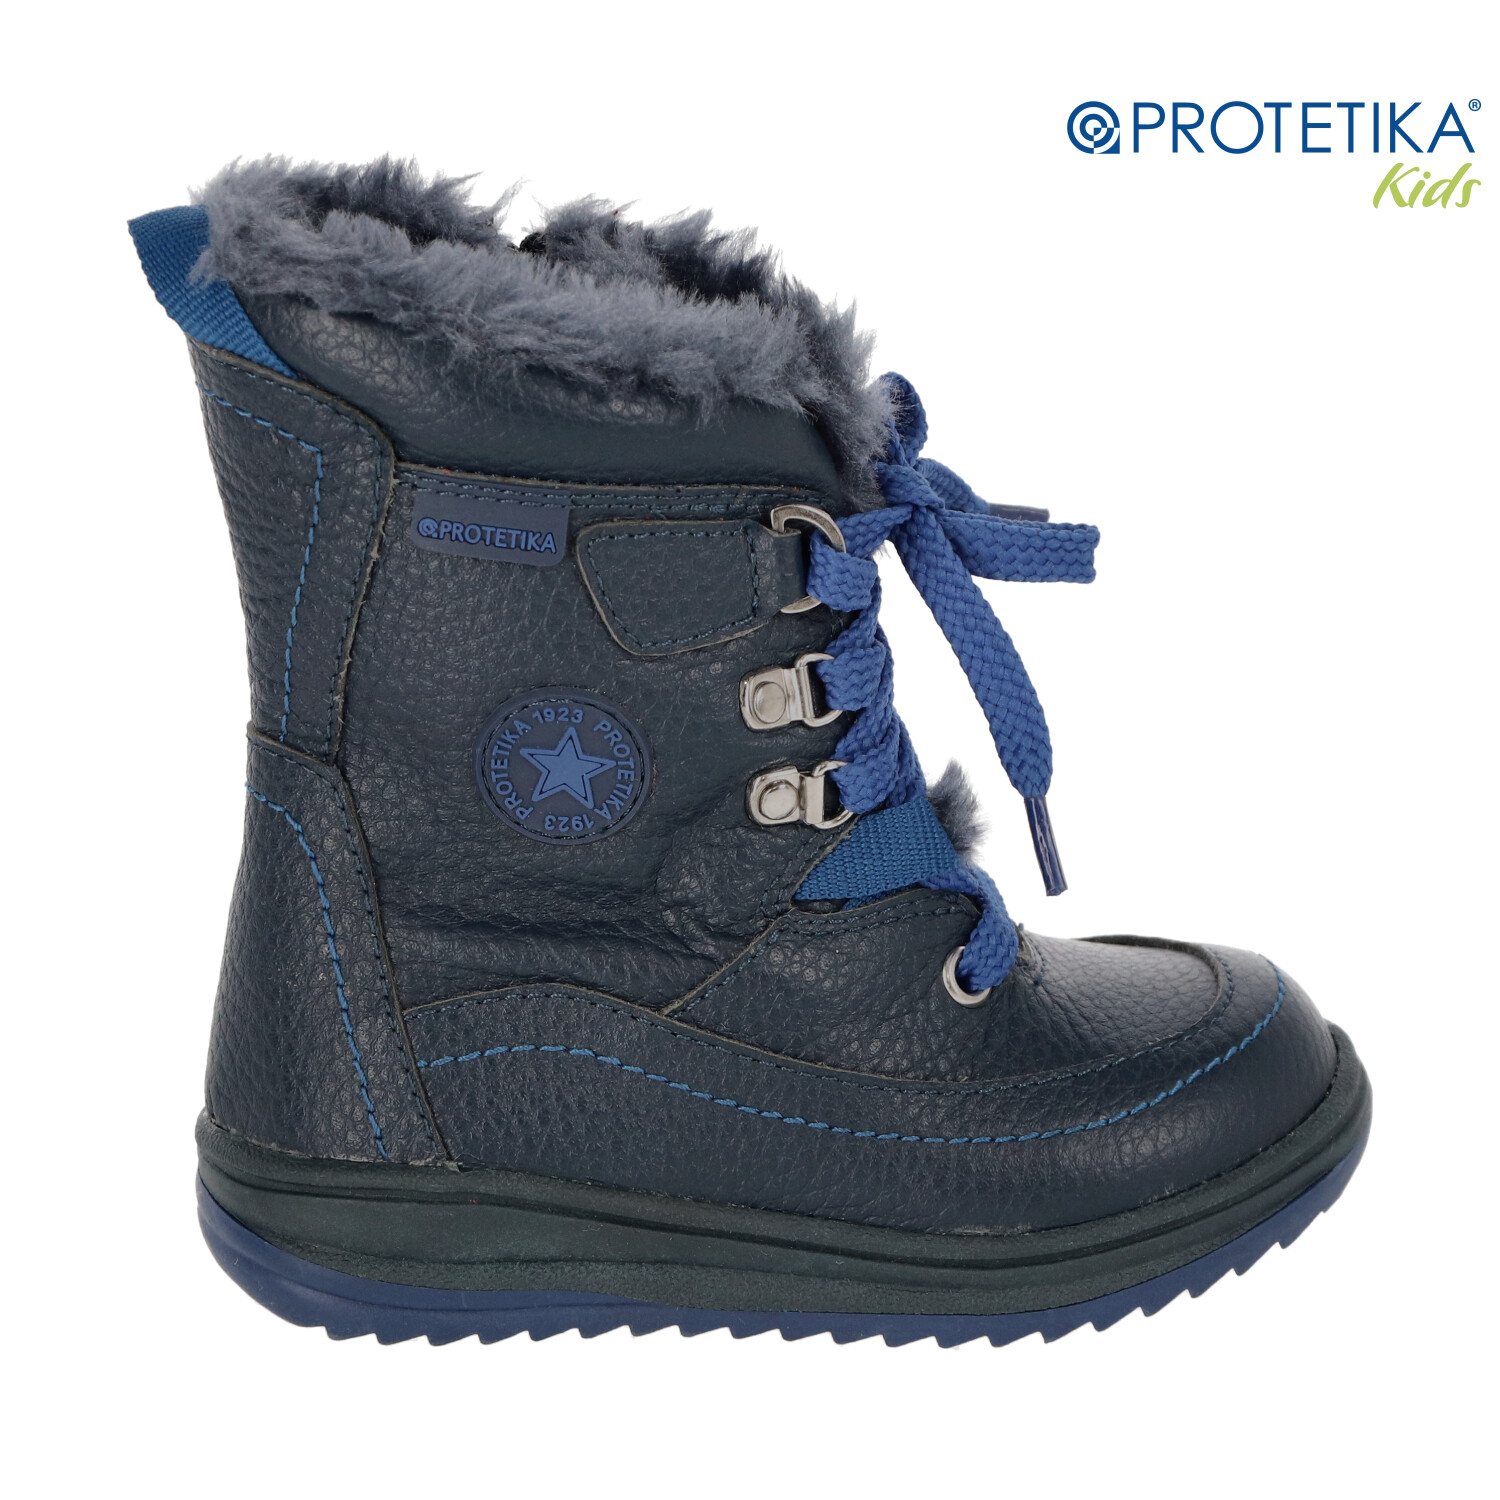 Protetika - zimné topánky BORY blue - zateplené kožušinkou